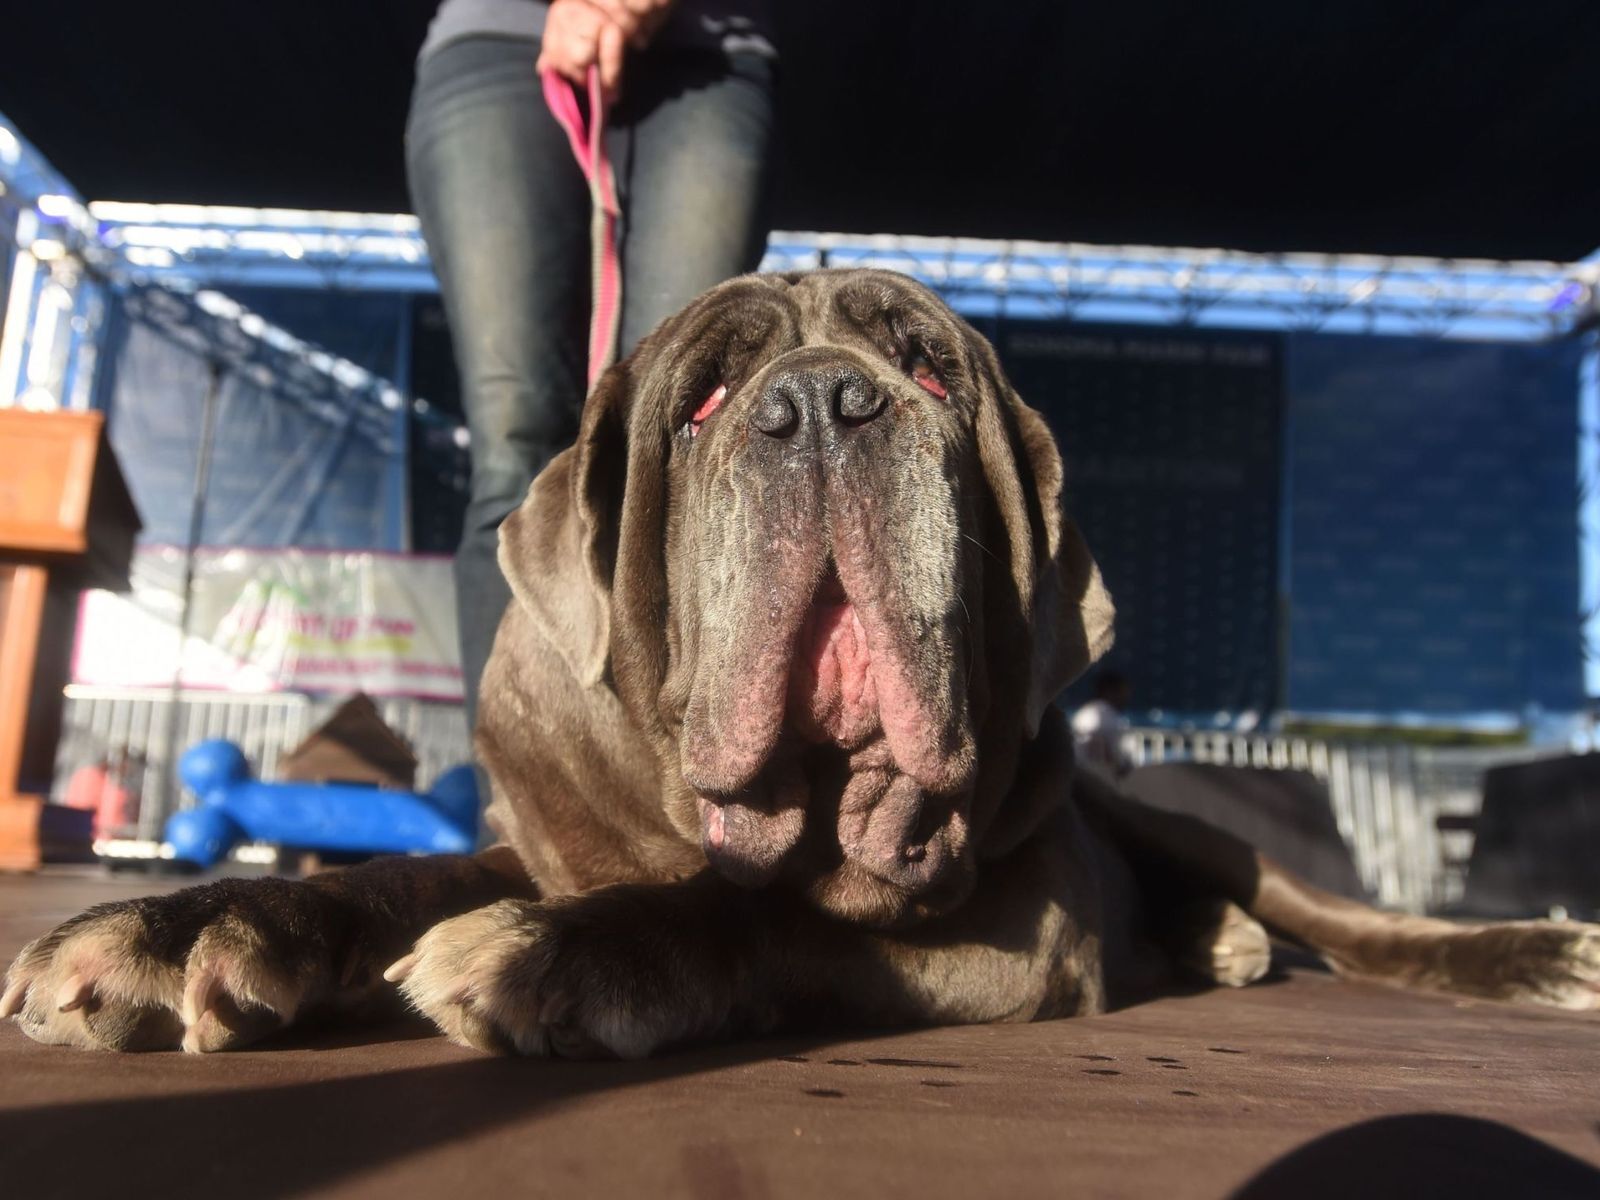 Найбільш потворна собака-2018: в США показали страшного переможця. Фоторепортаж